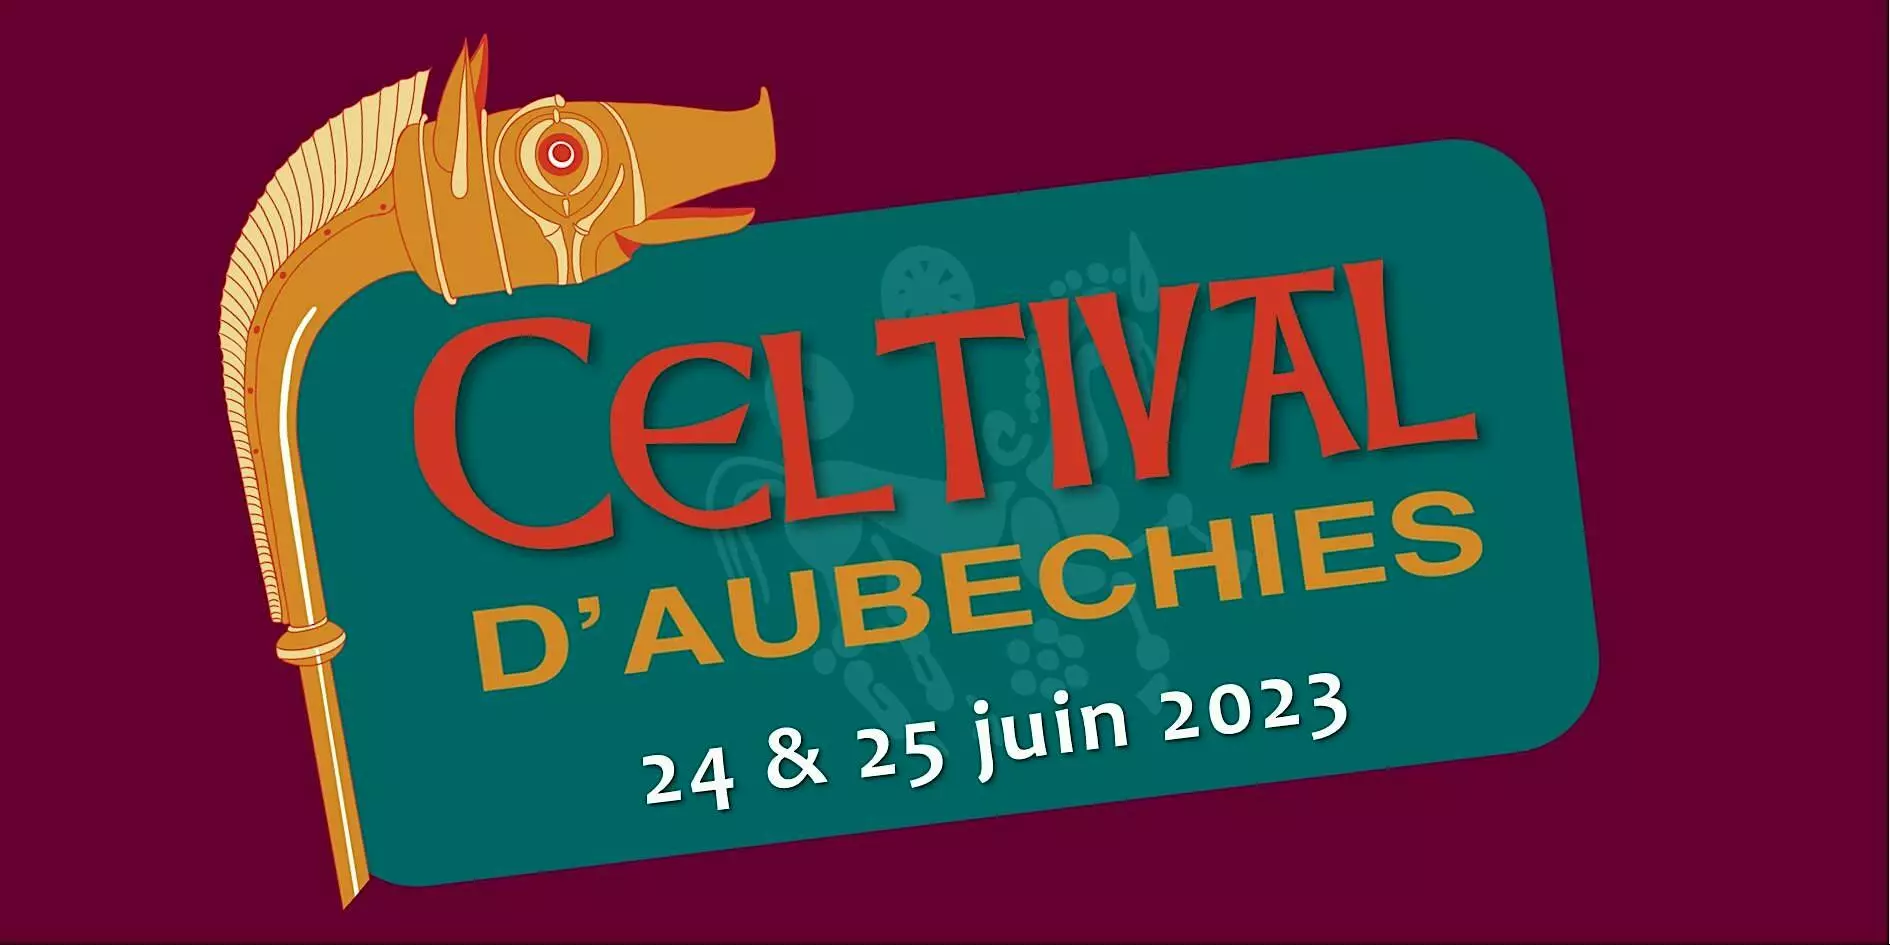 Evenings-Celtival d'Aubechies 2023